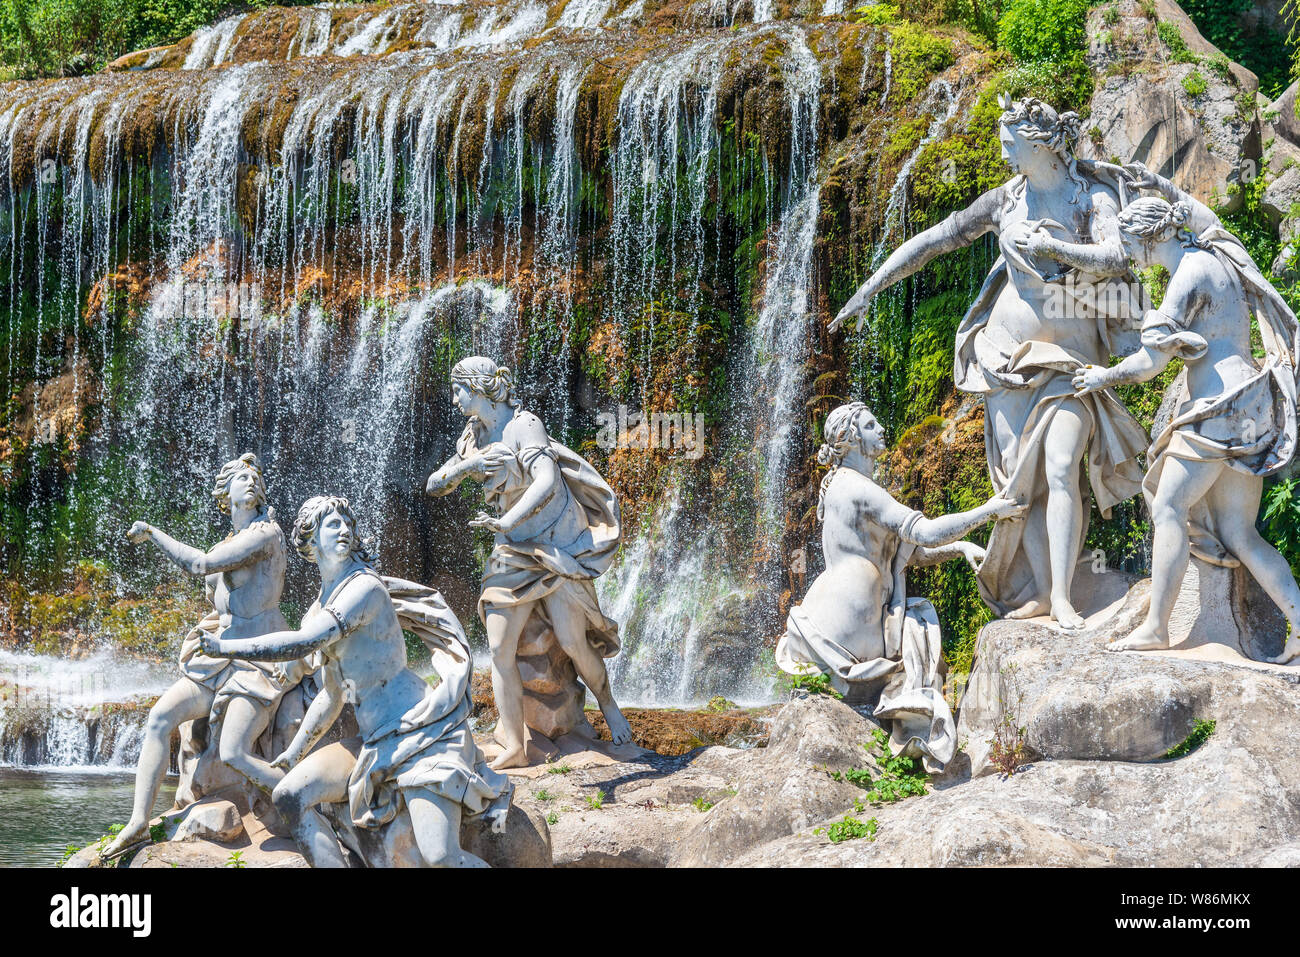 23 JUIN 2019 / Caserta, Italie : un groupe de statues en face d'une cascade dans les beaux jardins du palais de Caserta en Italie. Banque D'Images